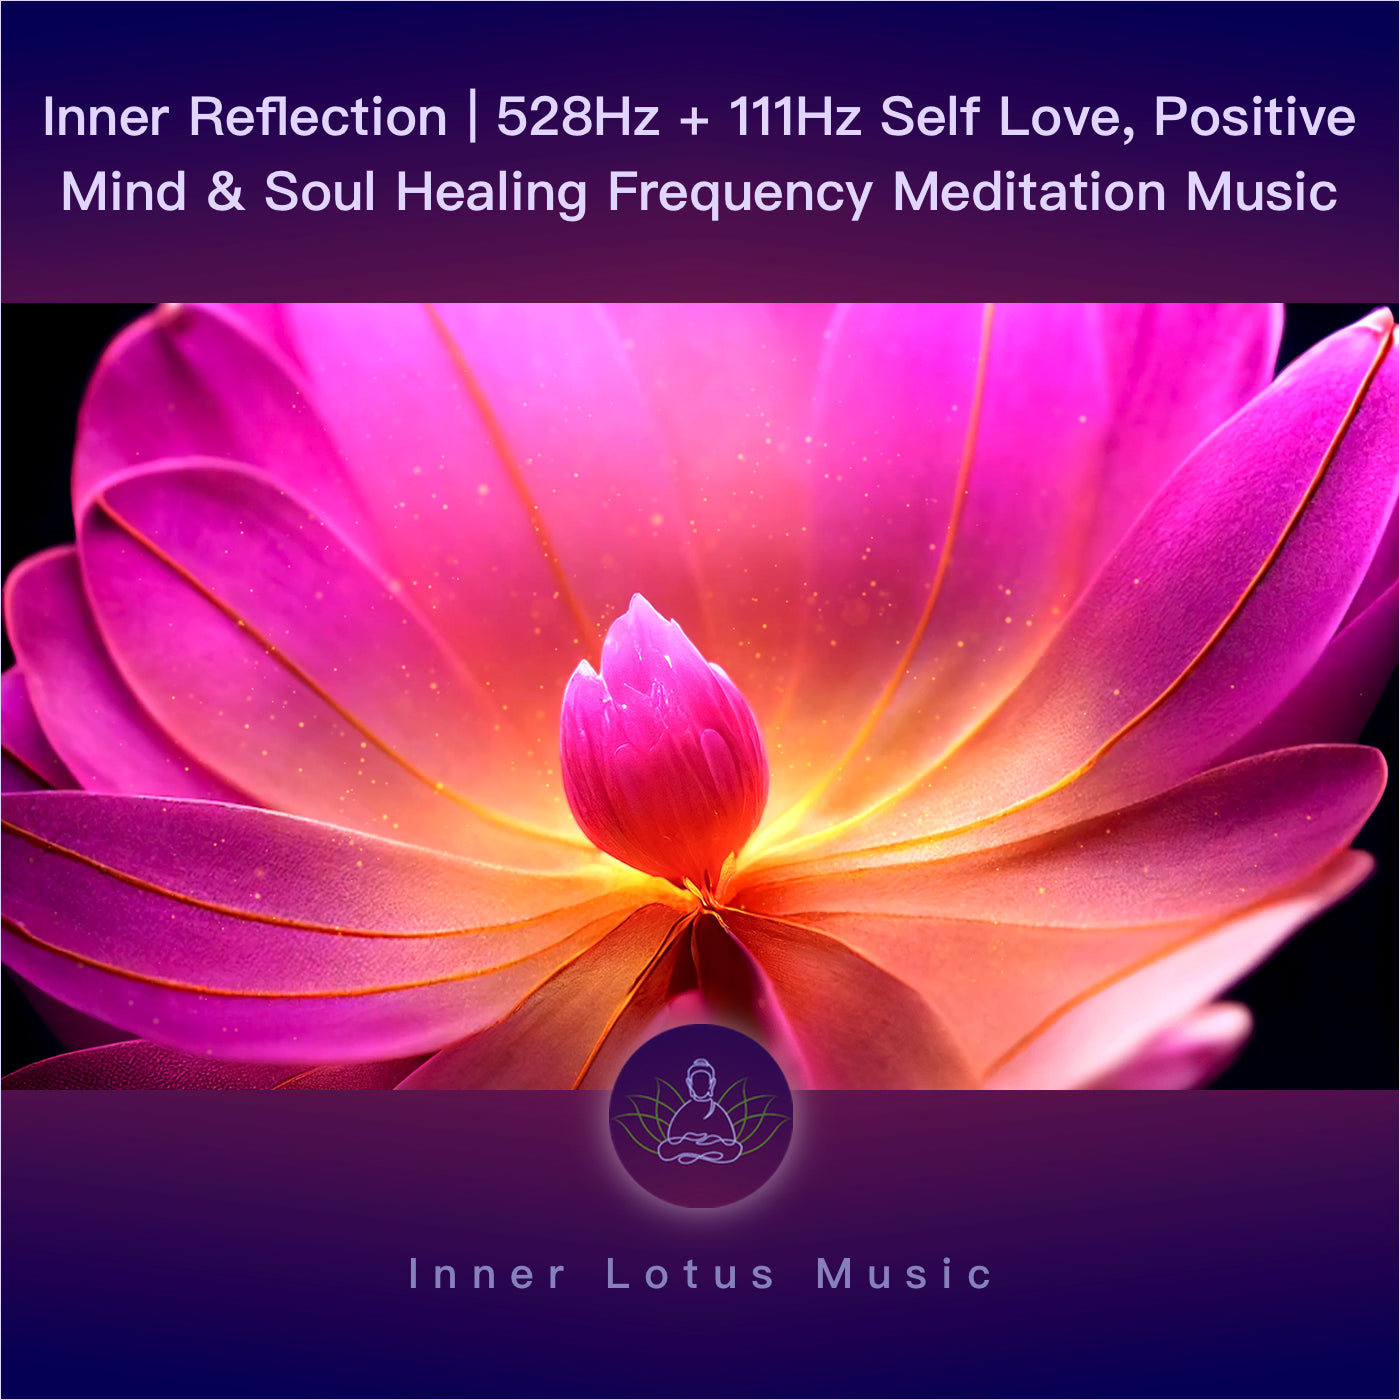 Innere Einkehr | 528Hz + 111Hz Selbstliebe, Positive Energie & Seelenfrieden Heilende Frequenz Musik